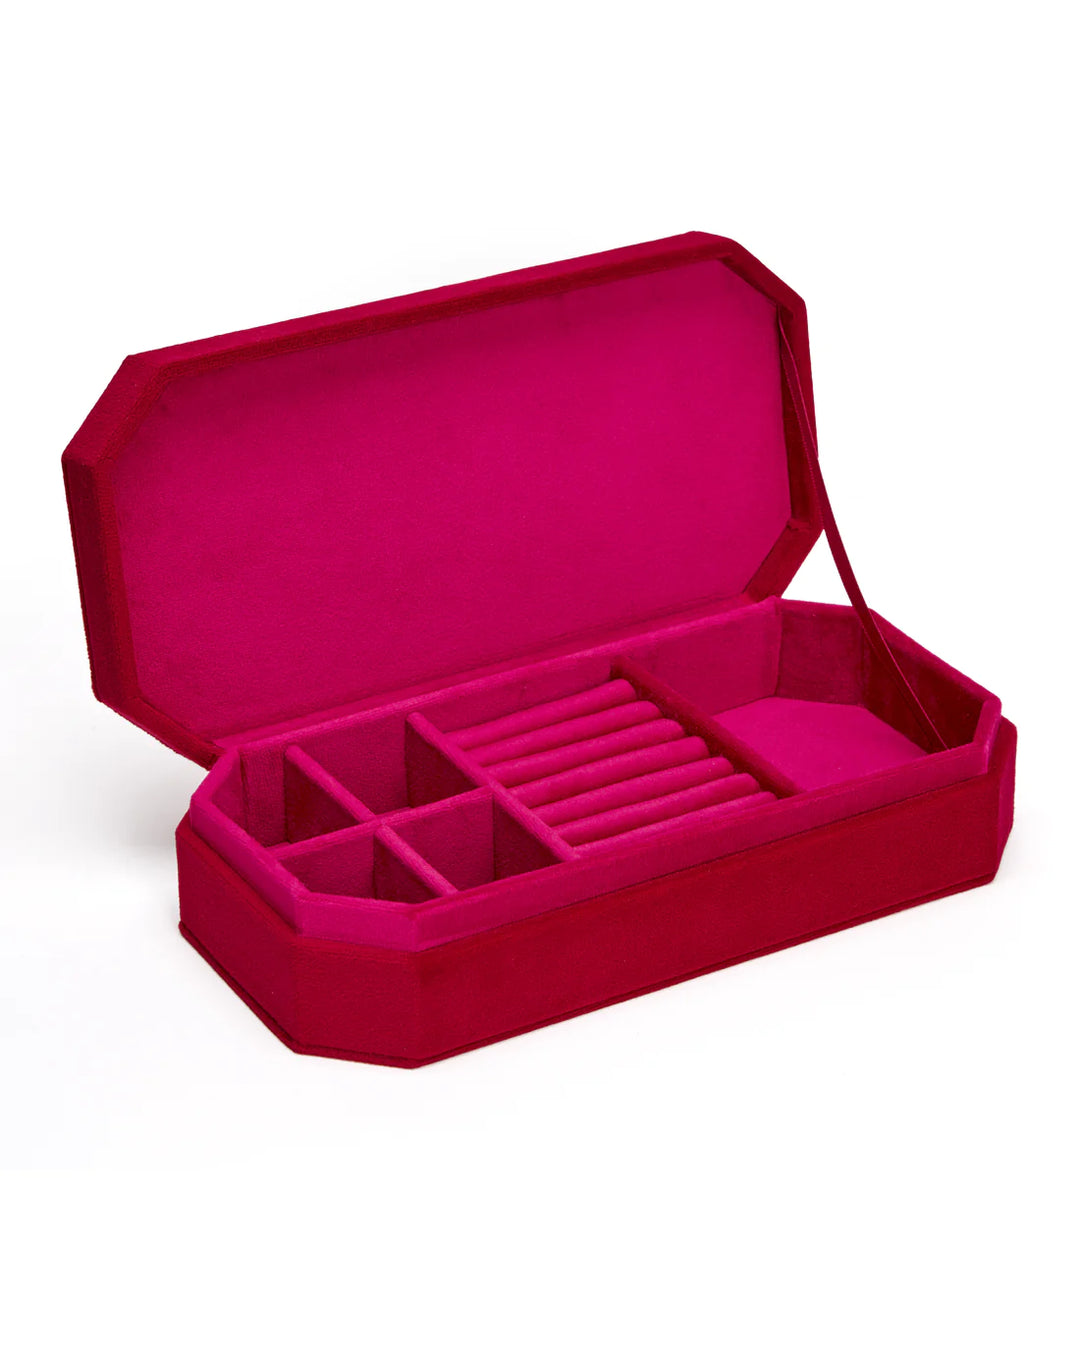 Luxurious Red Velvet Jewellery Box